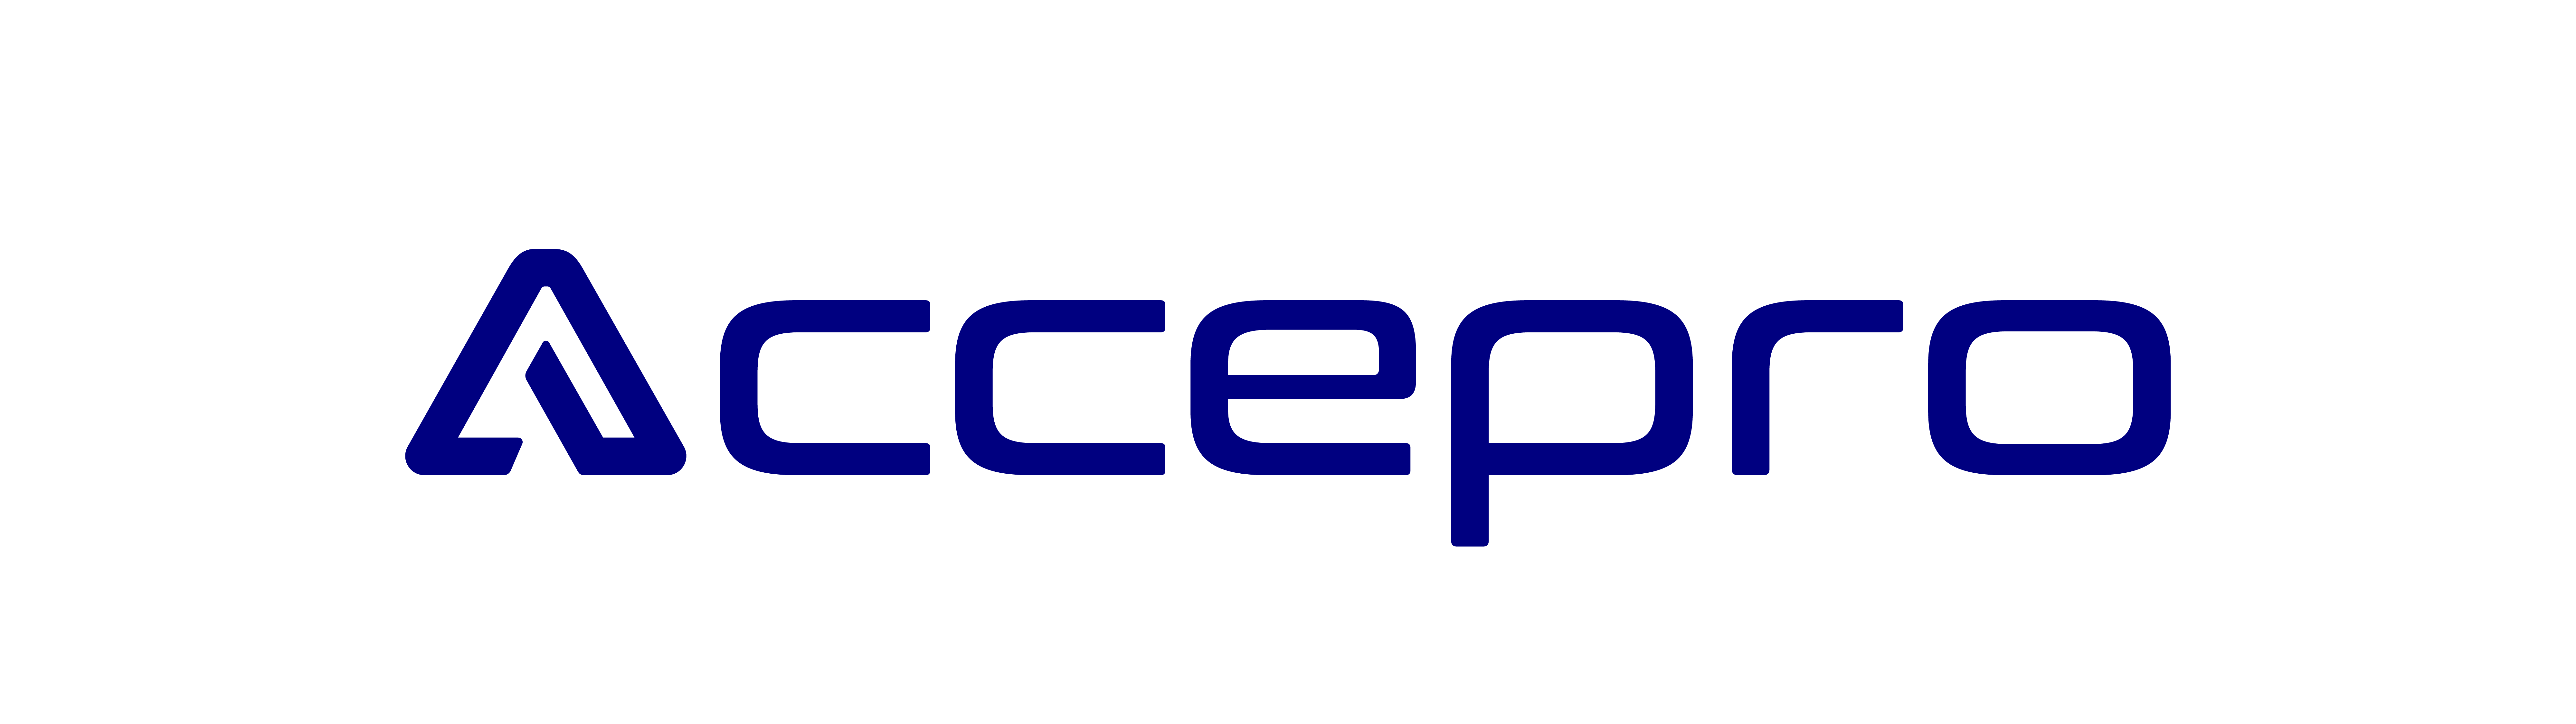 Accepro, LLC.